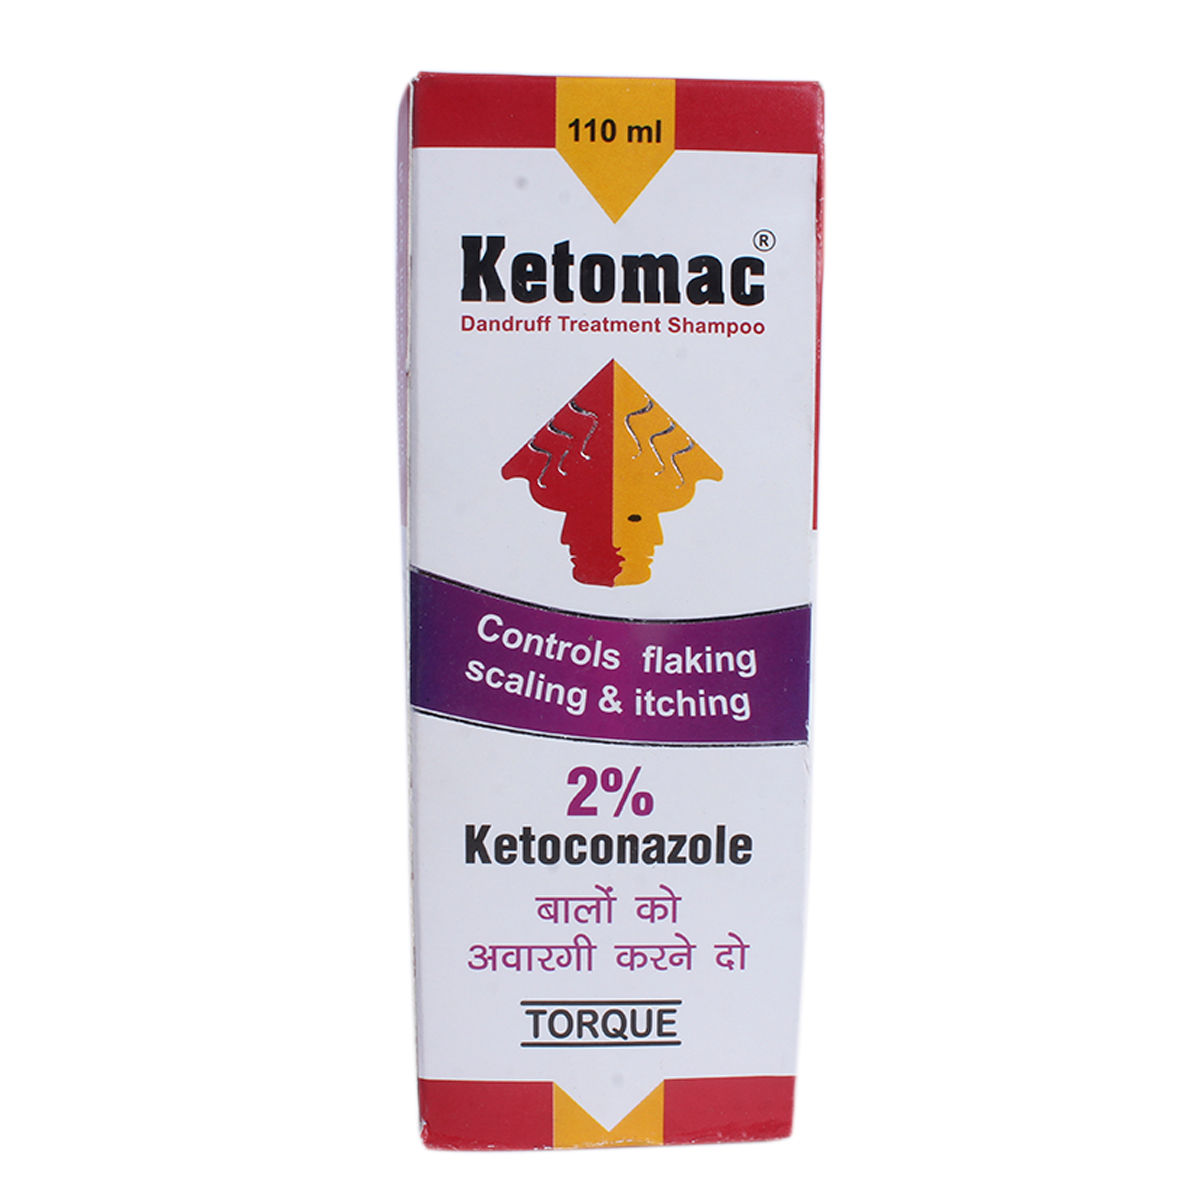 Buy Ketomac Shampoo 110 ml Online